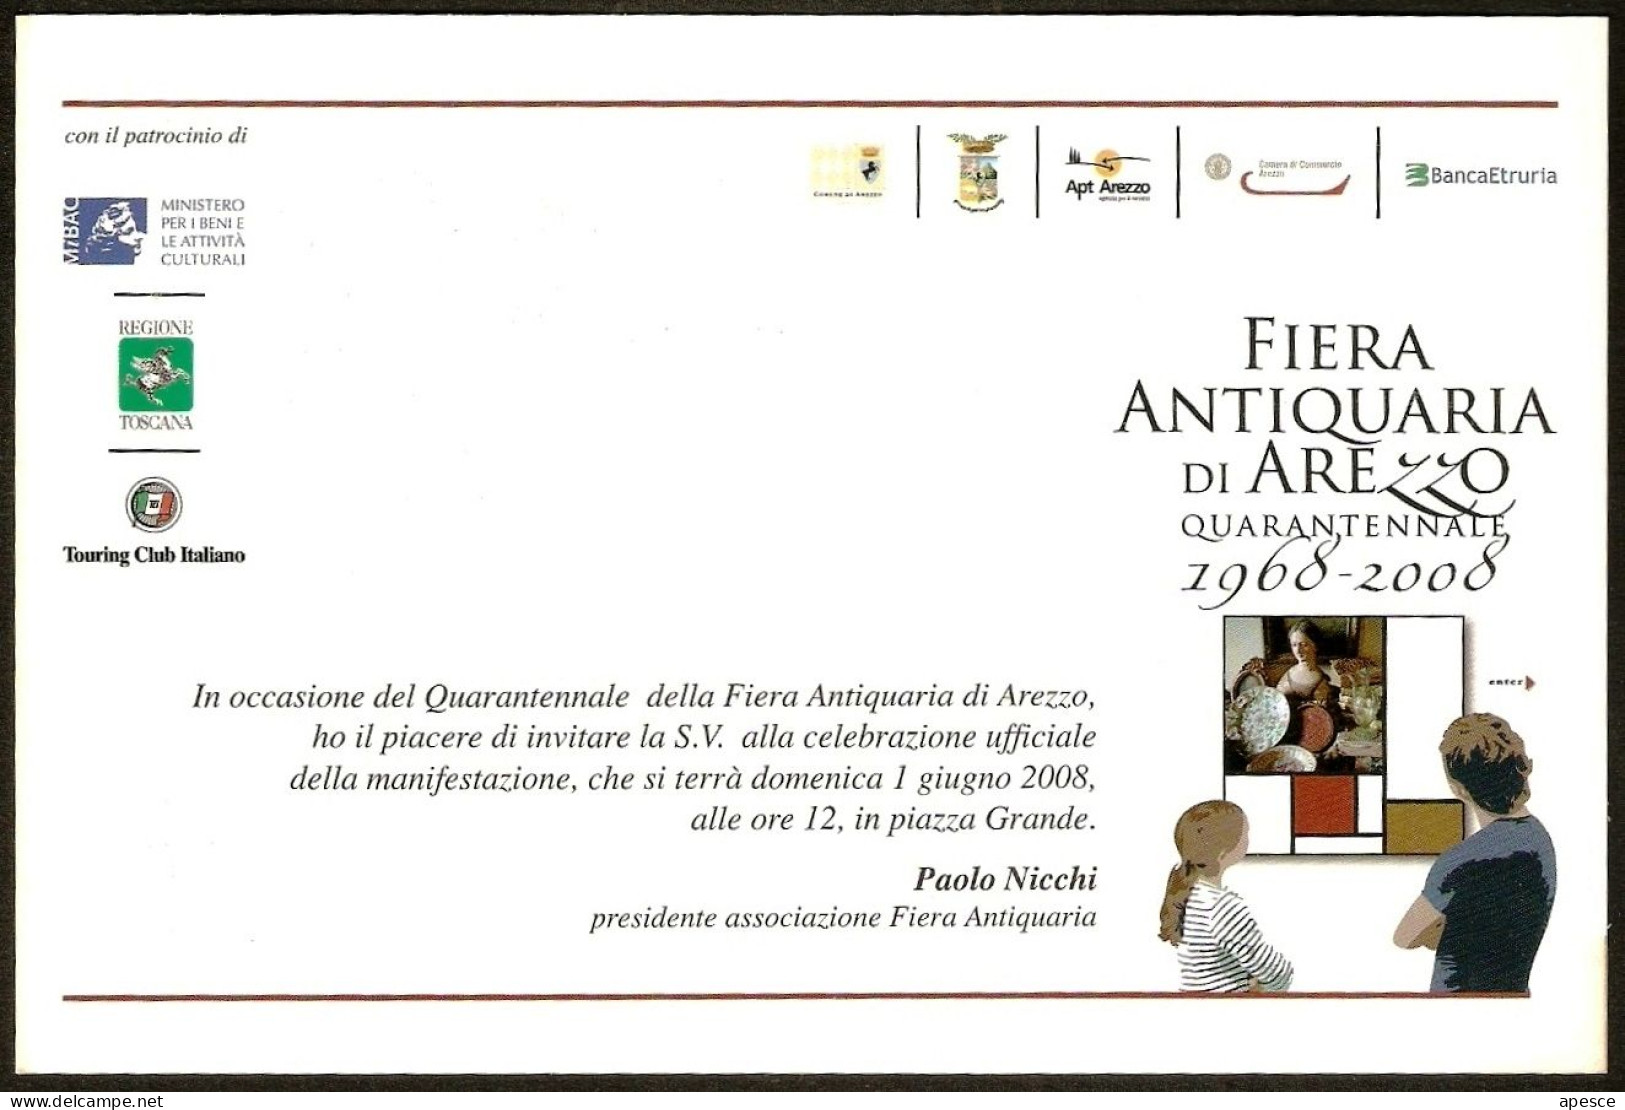 ITALIA - FIERA ANTIQUARIA DI AREZZO - QUARANTENNALE - 1968/2008 - CARTOLINA INVITO MANIFESTAZIONE - I - Marchés